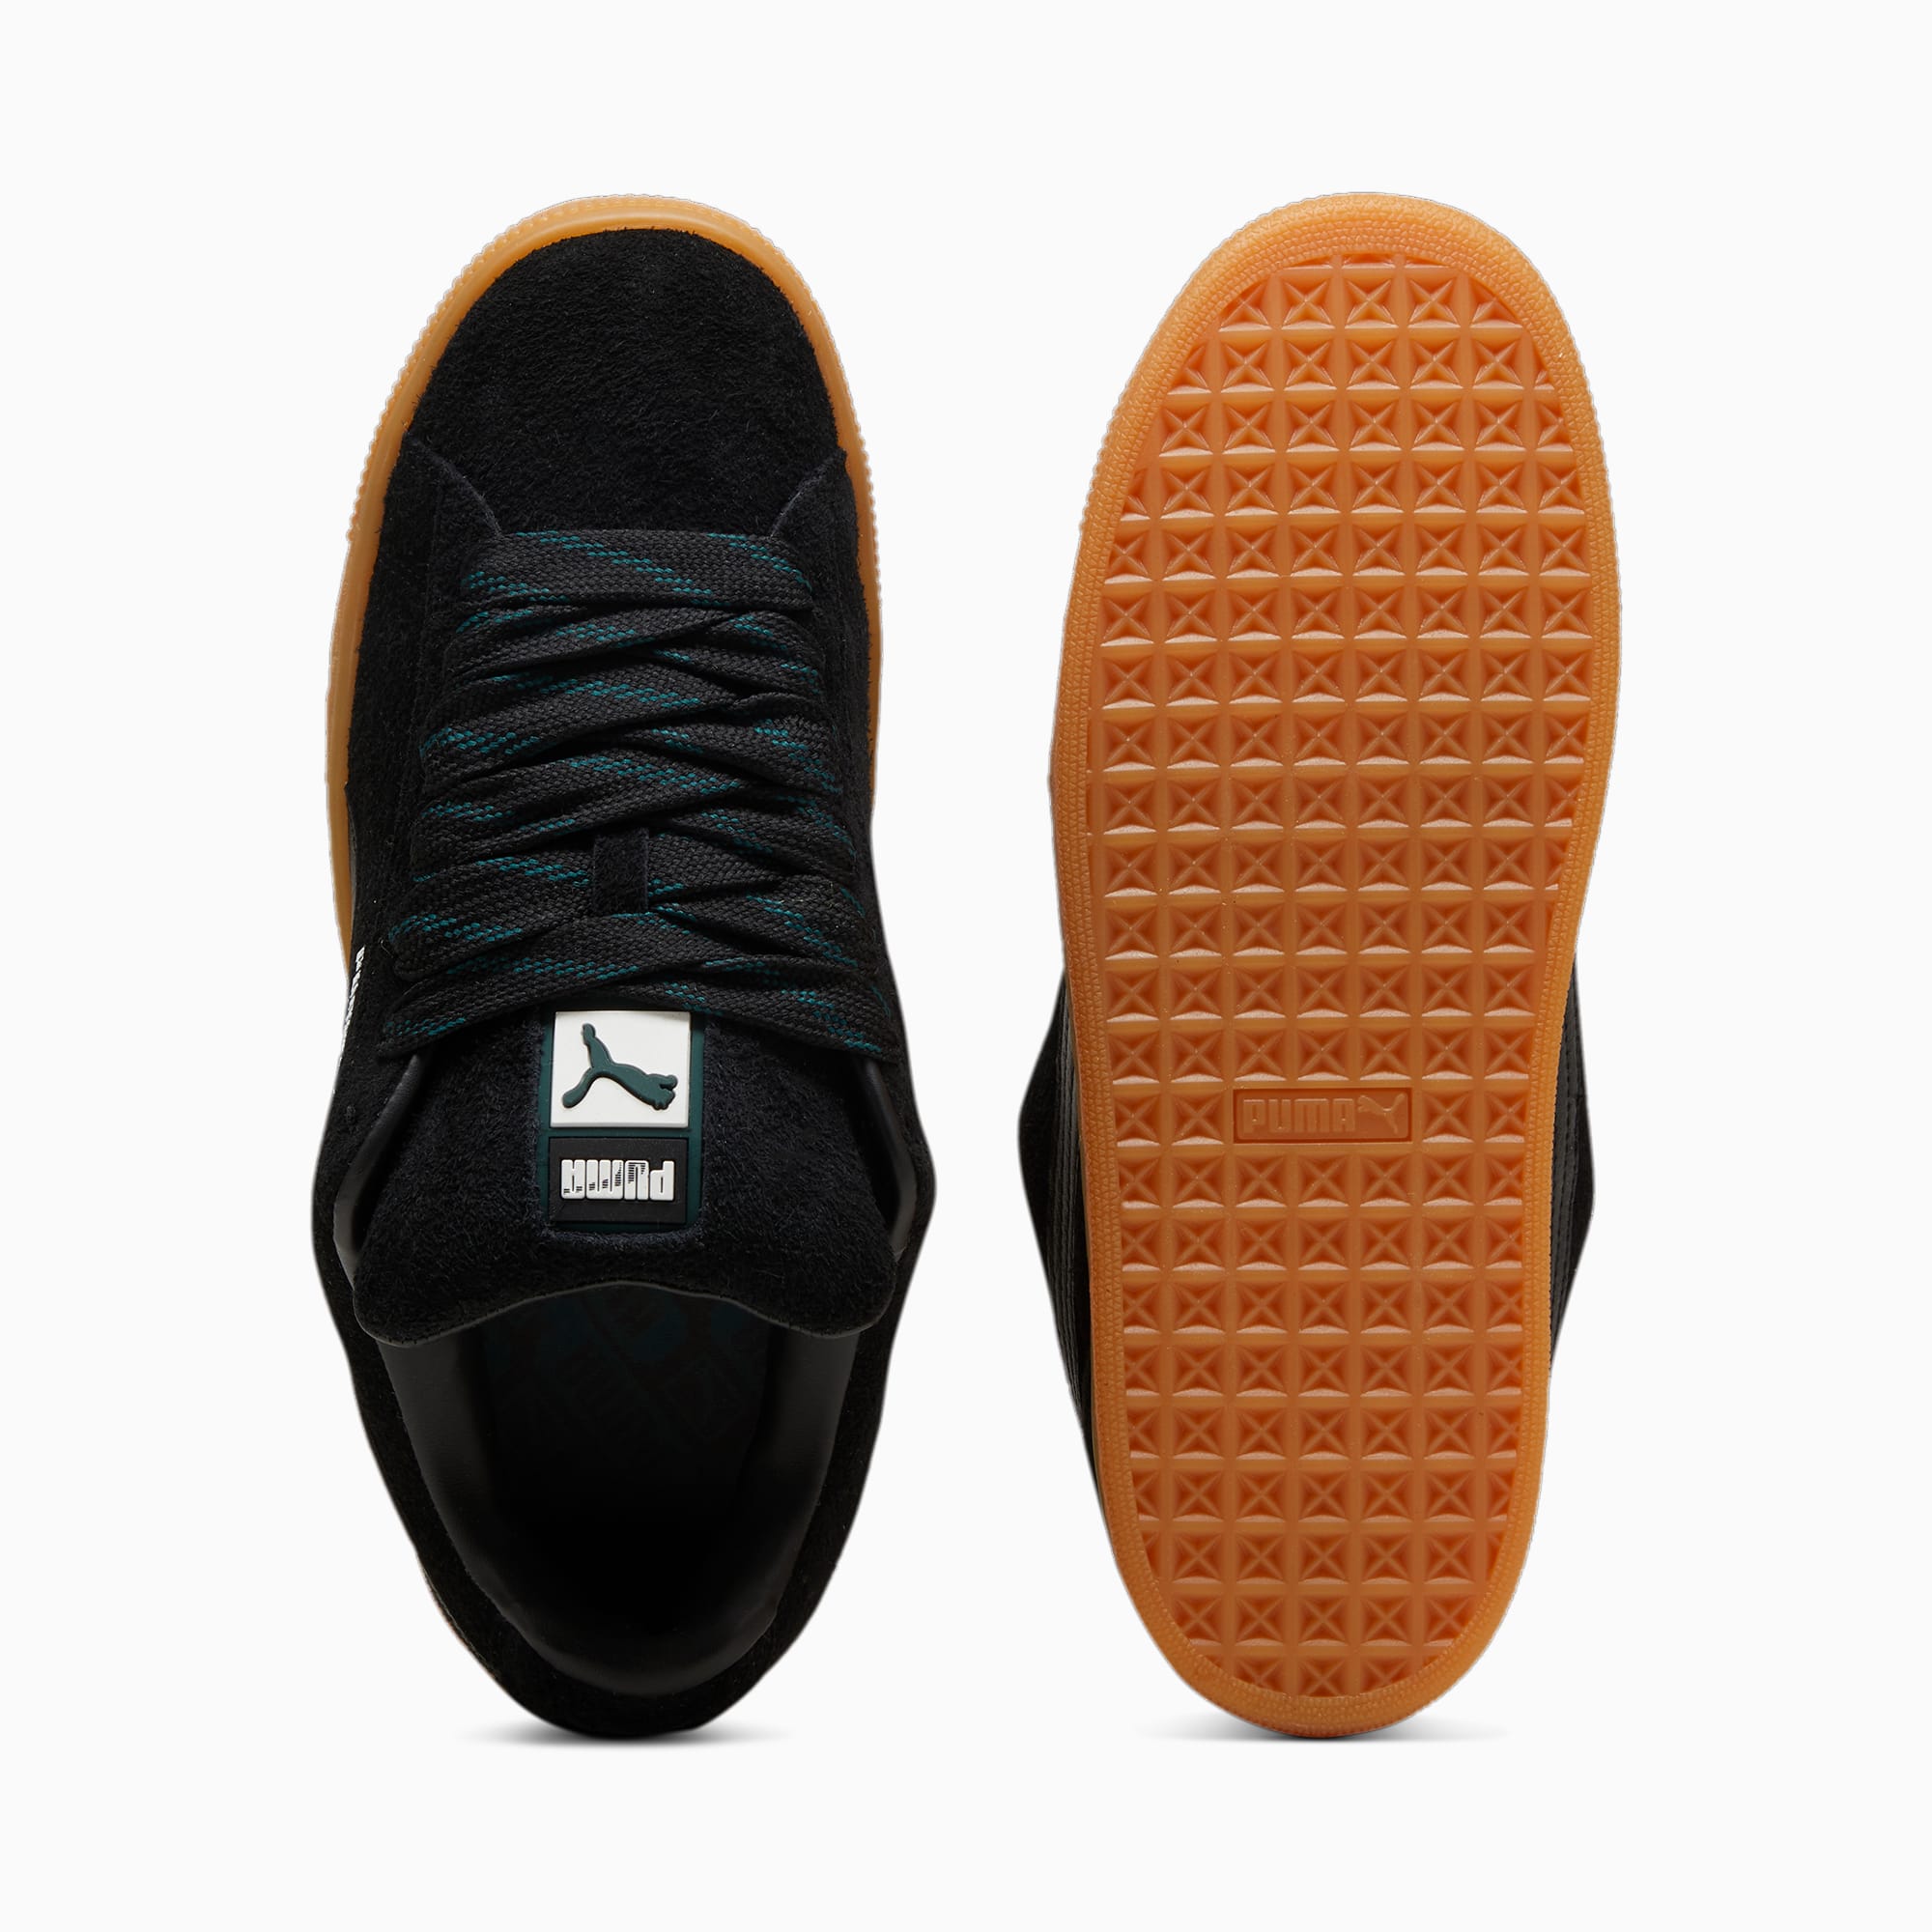 PUMA Suede XL Flecked Sneakers Unisex Schuhe, Schwarz/Grün, Größe: 39, Schuhe